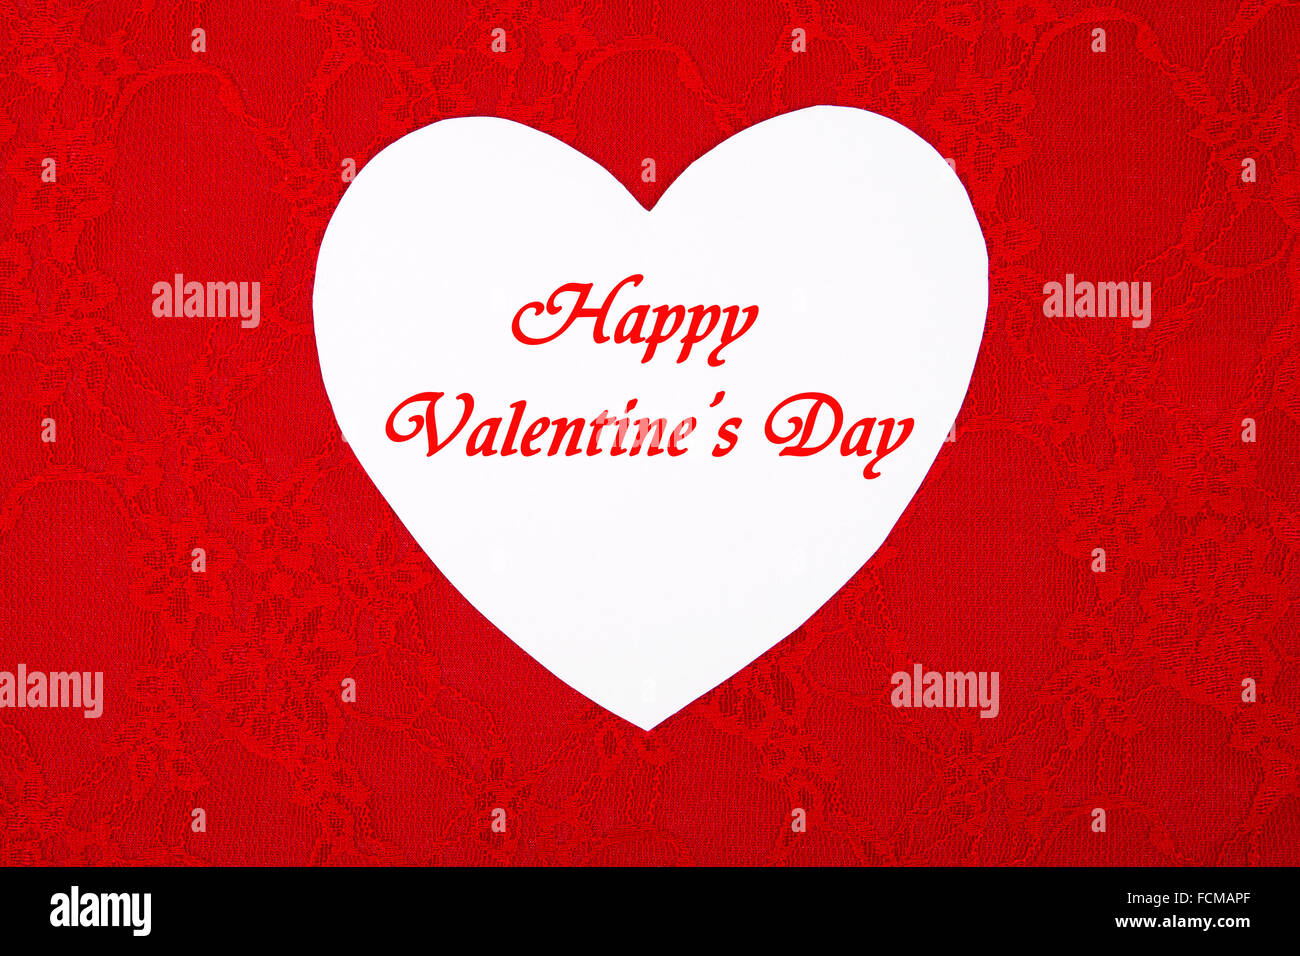 Happy Valentine's Day Stock Photo